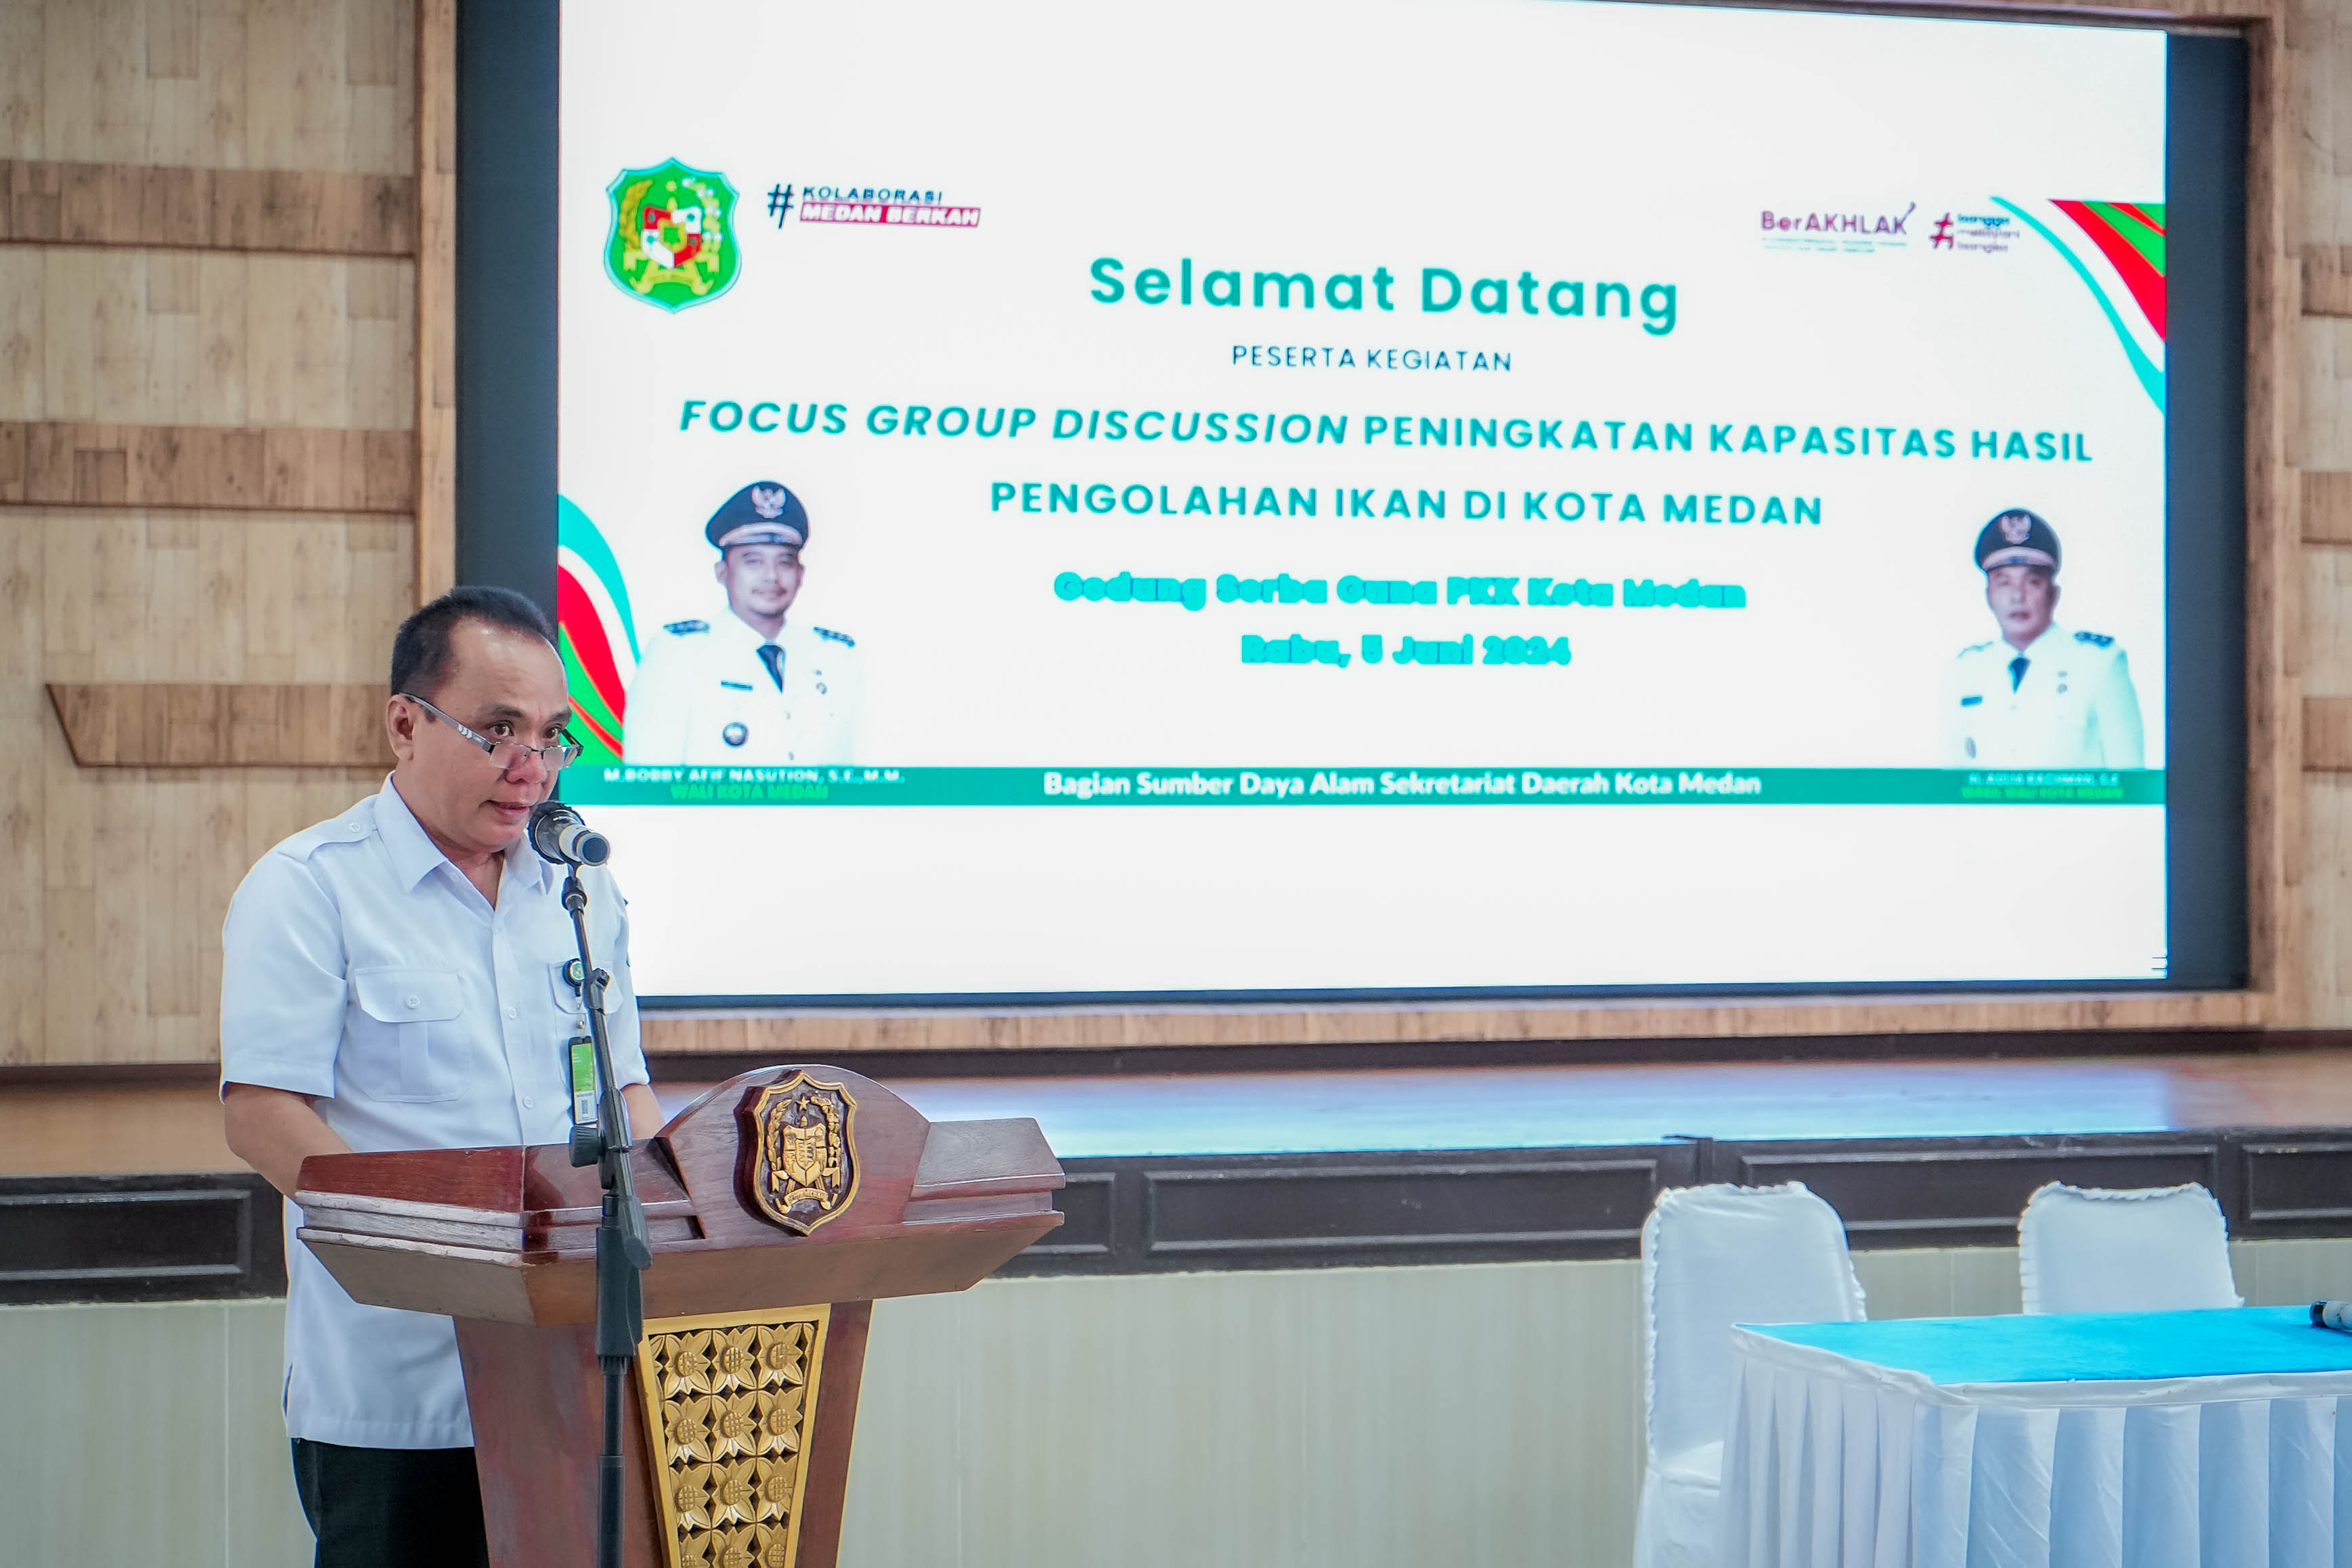 Buka FGD Peningkatan Kapasitas Hasil Pengolahan Ikan, Bobby Nasution: Perlu Pemahaman Problem Hulu dan Hilir  